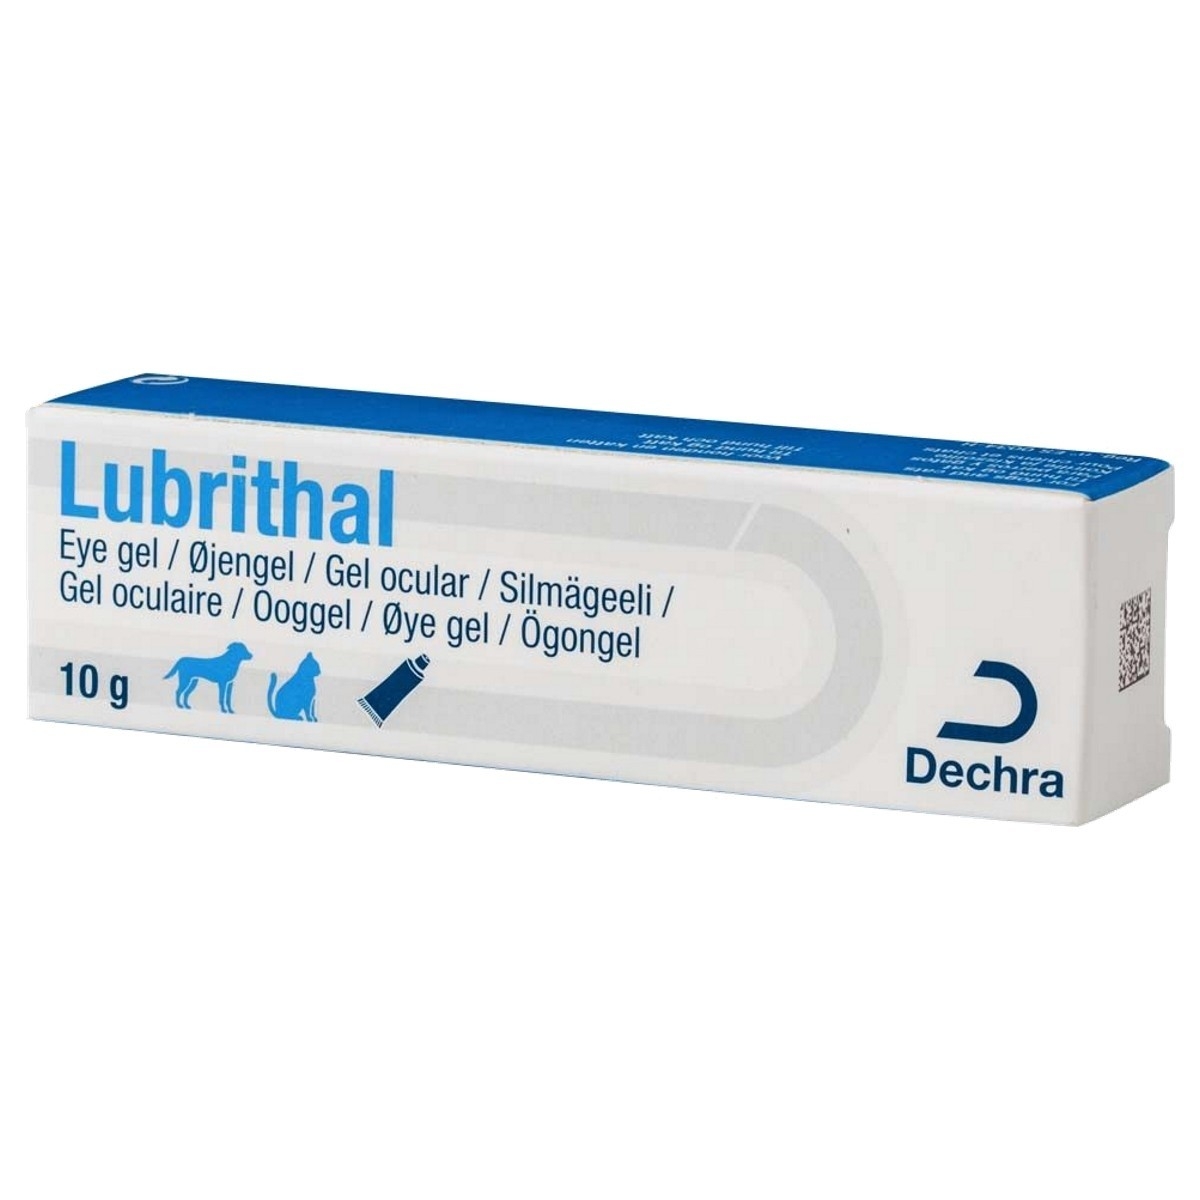 Lubrithal, 10 g petmart